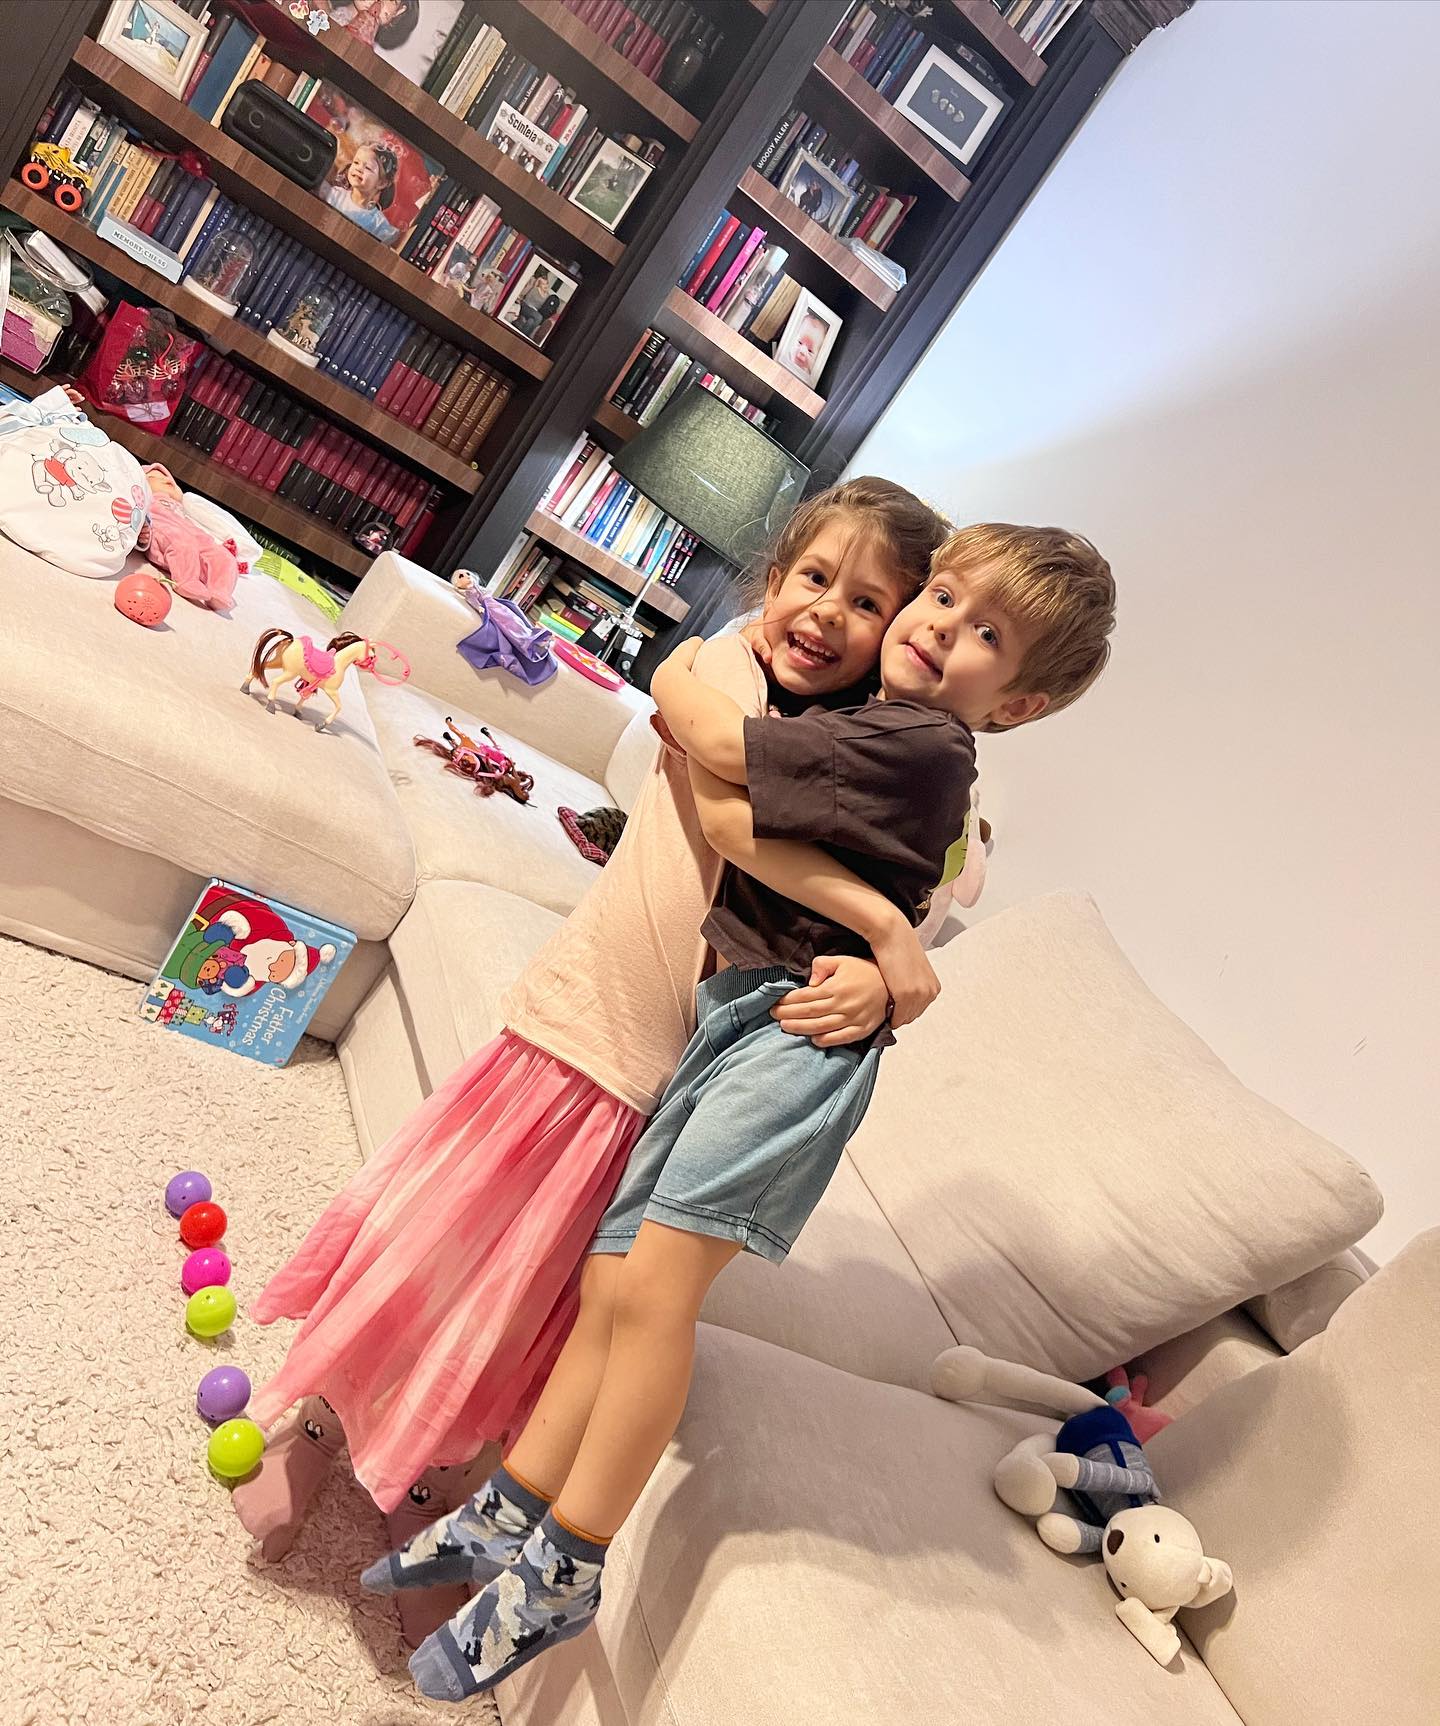 Ana și Vlad, copiii Simonei Gherghe, jucându-se împreună într-o sufragerie plină cu jucării și cărți